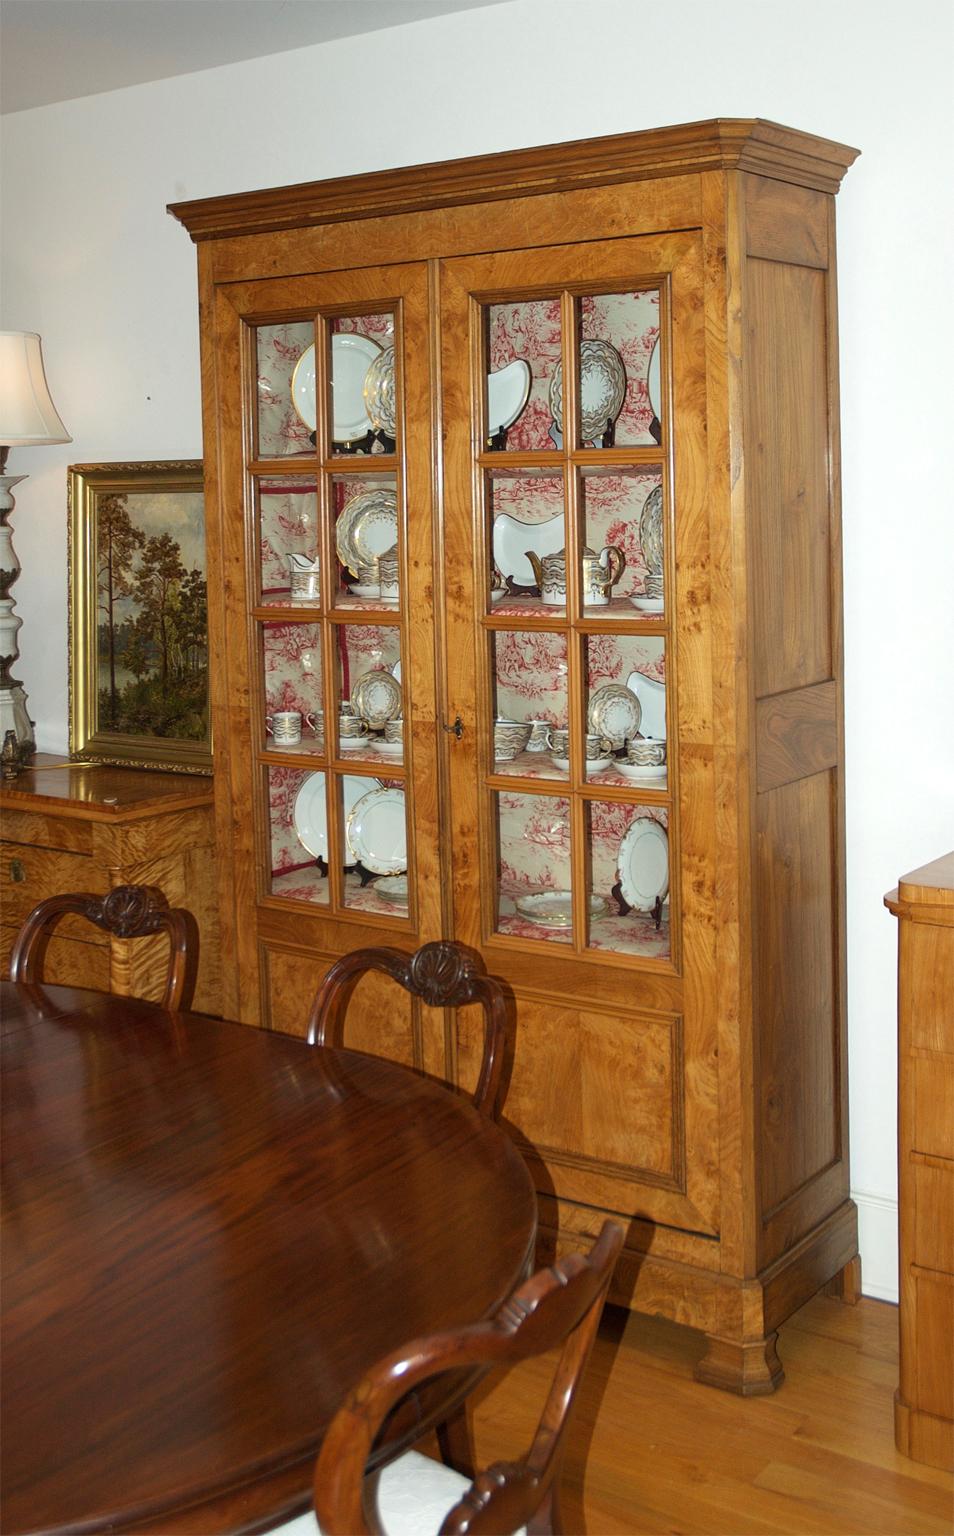 Très belle armoire ou bibliothèque Louis Philippe en châtaignier avec des panneaux de verre à meneaux. Fabriquée en châtaignier massif avec un beau veinage et de petits yeux roussis, l'armoire offre quatre étagères fixes, une quincaillerie d'origine